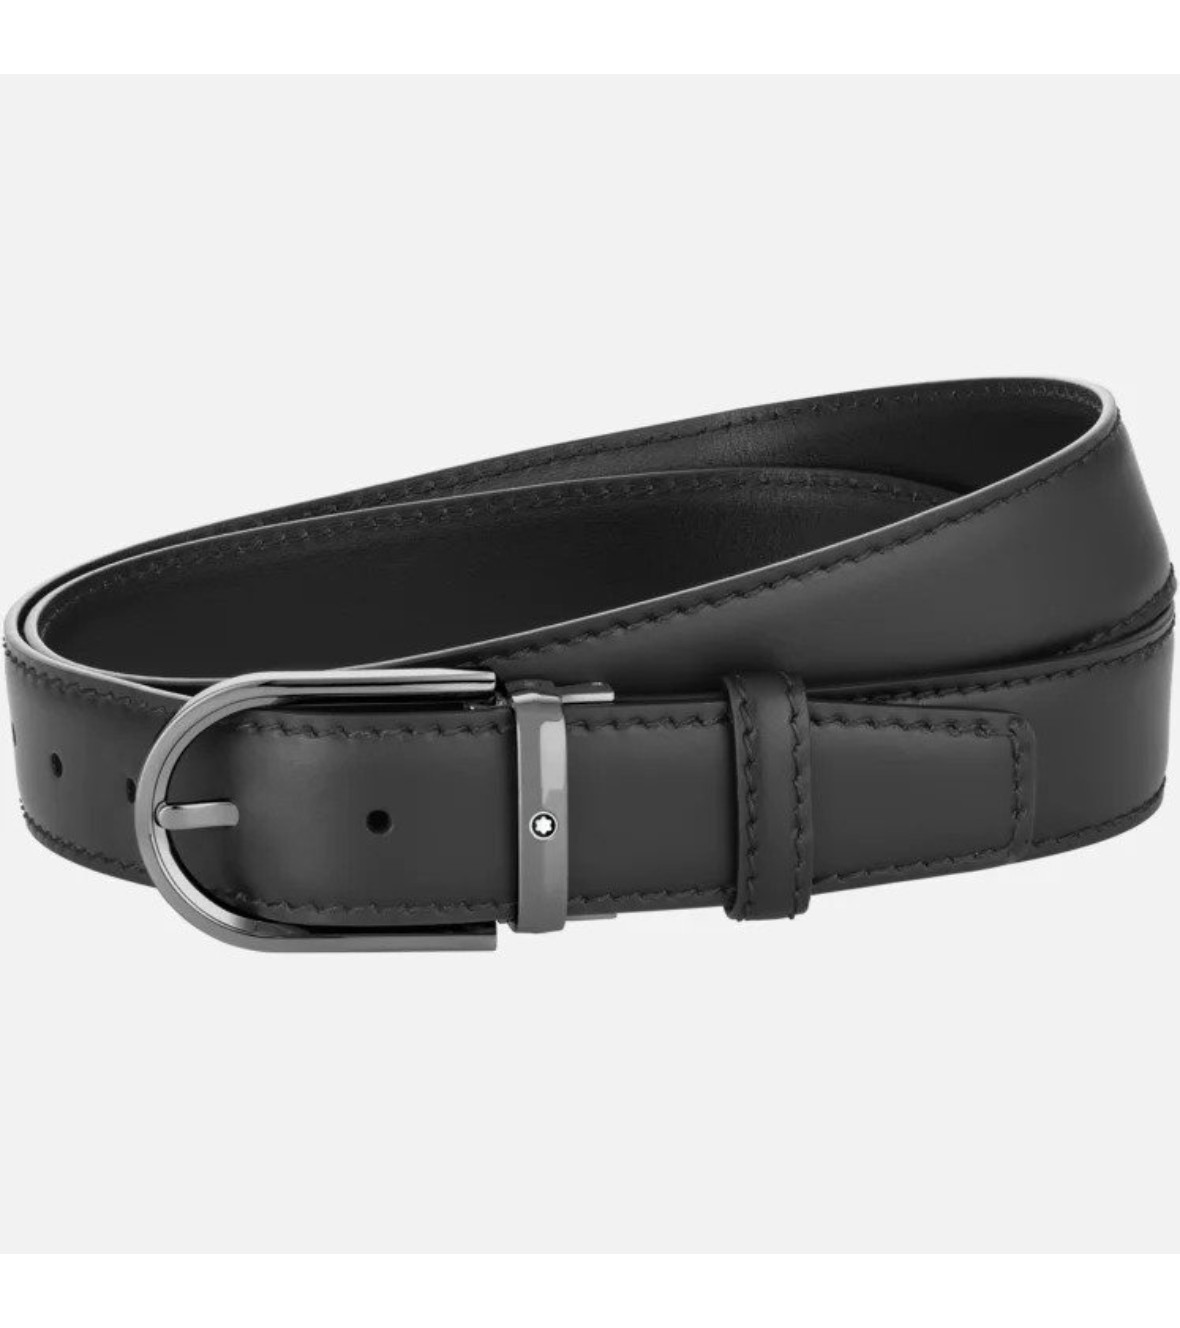 Horseshoe Buckle Black 35 mm Leather Belt 128770